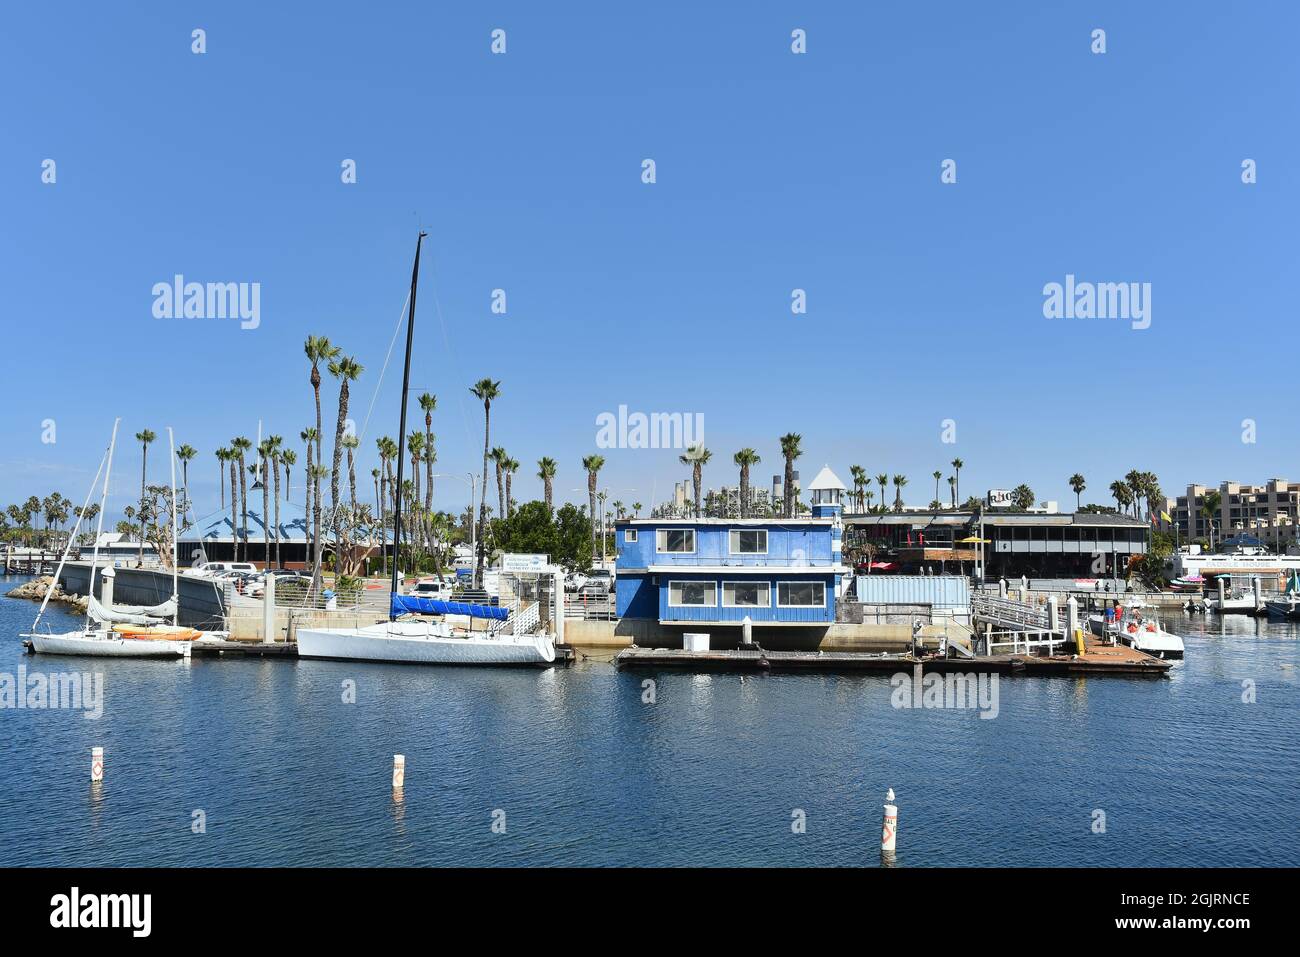 REDONDO BEACH, CALIFORNIA - 10 SEP 2021: The Redondo Beach Marina with Boats, Restaurants and Shops. Stock Photo